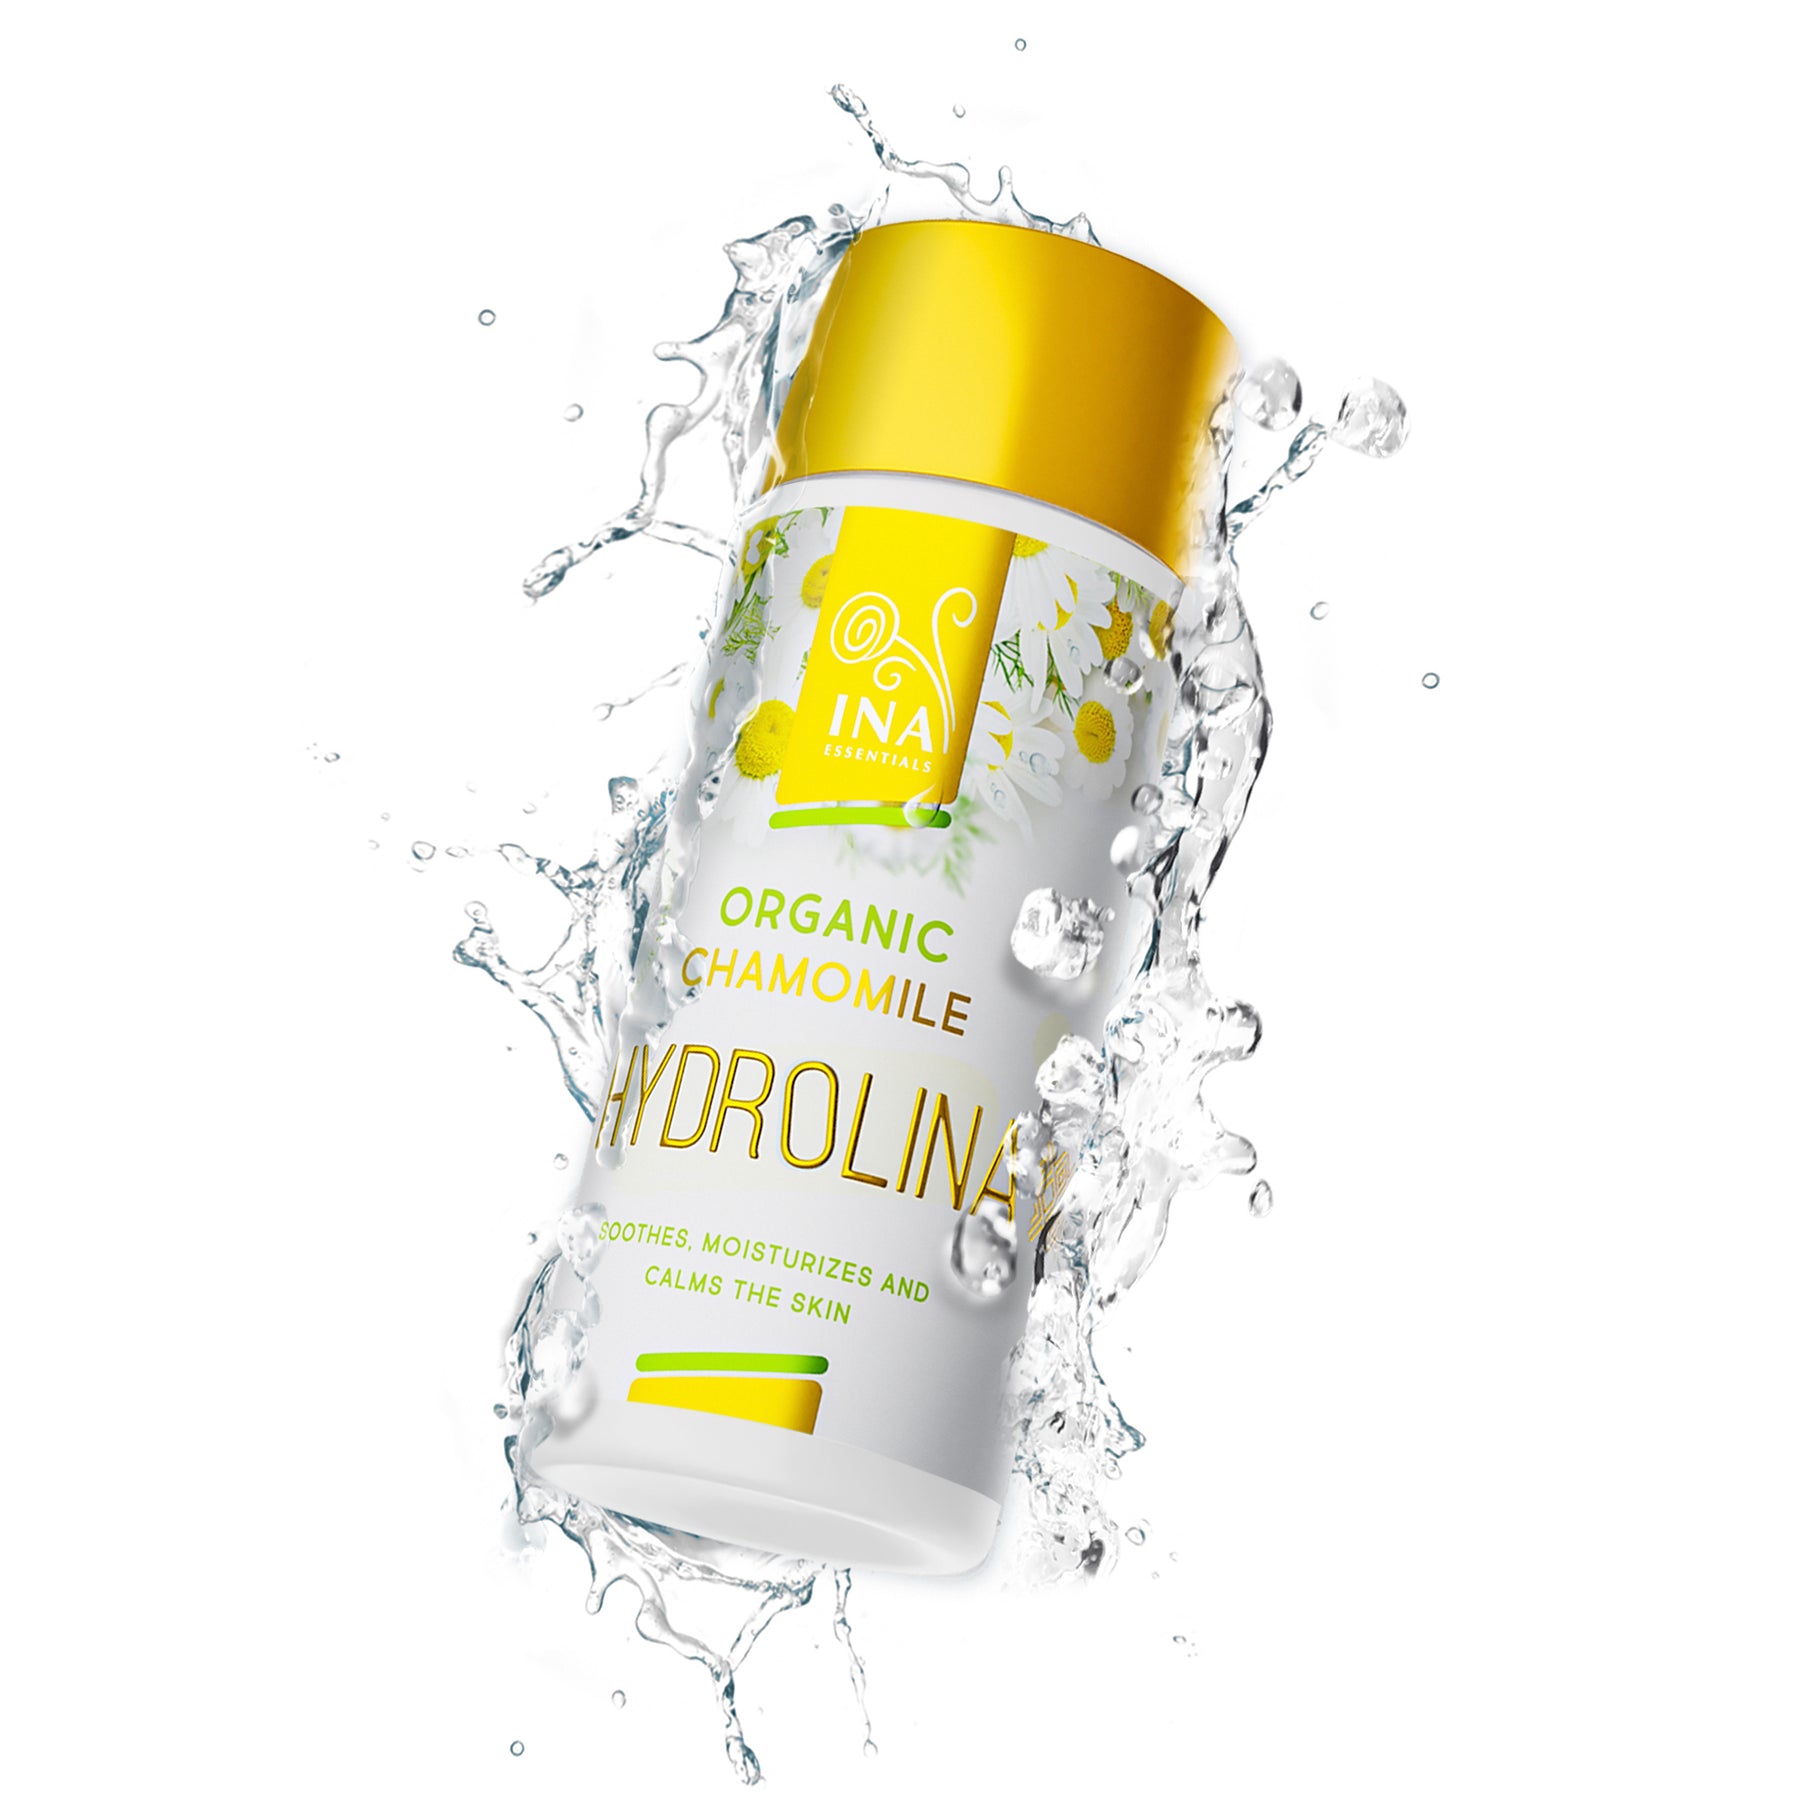 Organic Chamomile water - Hydrolina for eczema and irritated skin - 150ml (Hydrolat)